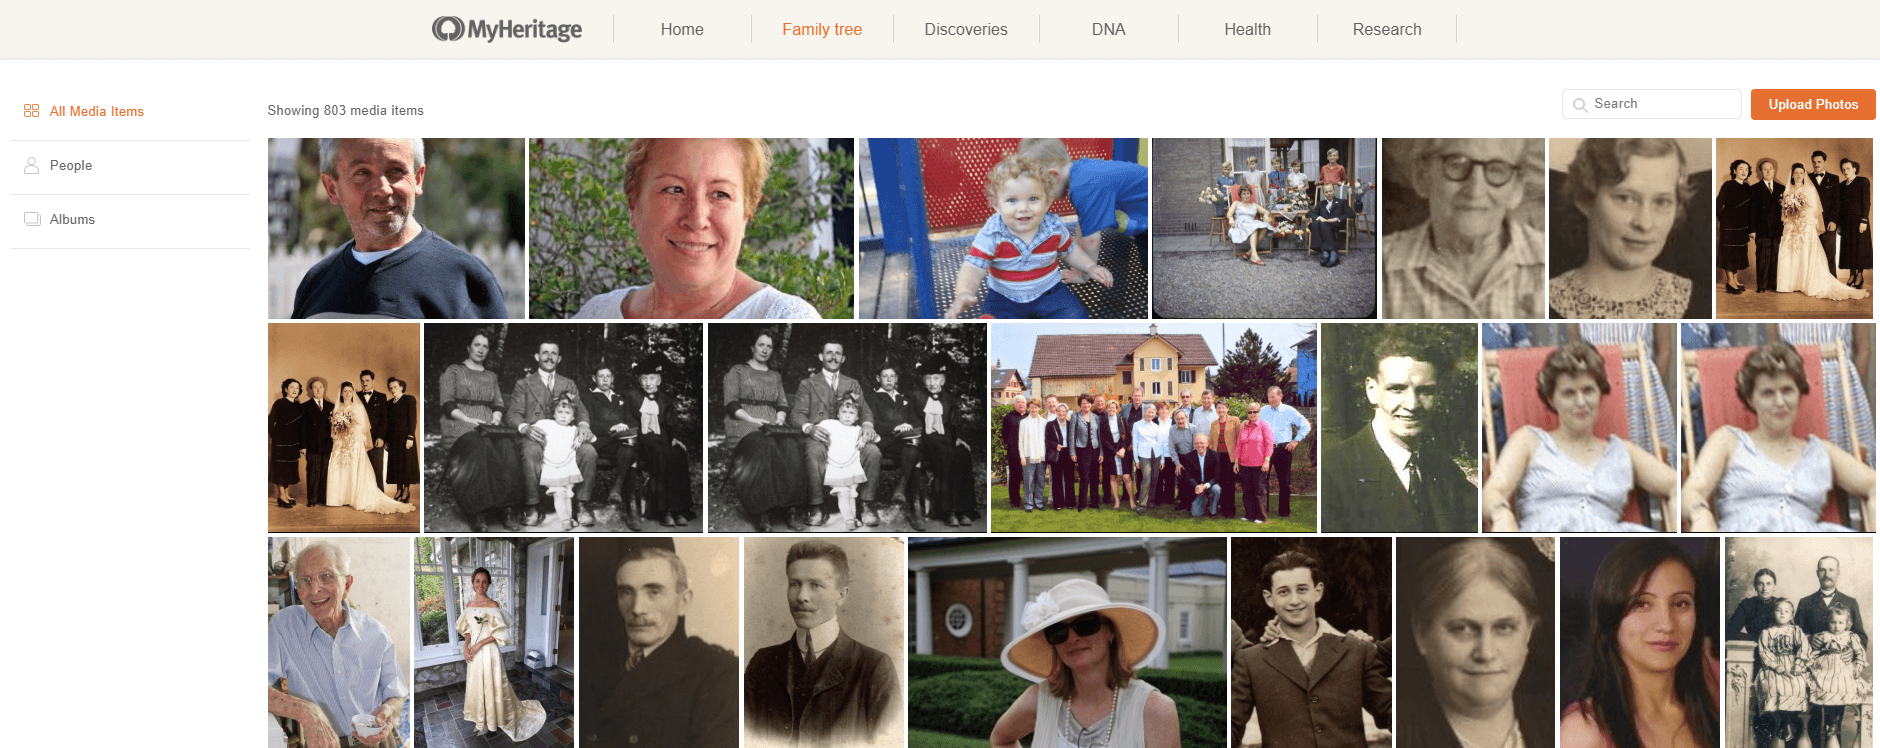 קטגורית "כל פריטי המדיה" ב-MyHeritage